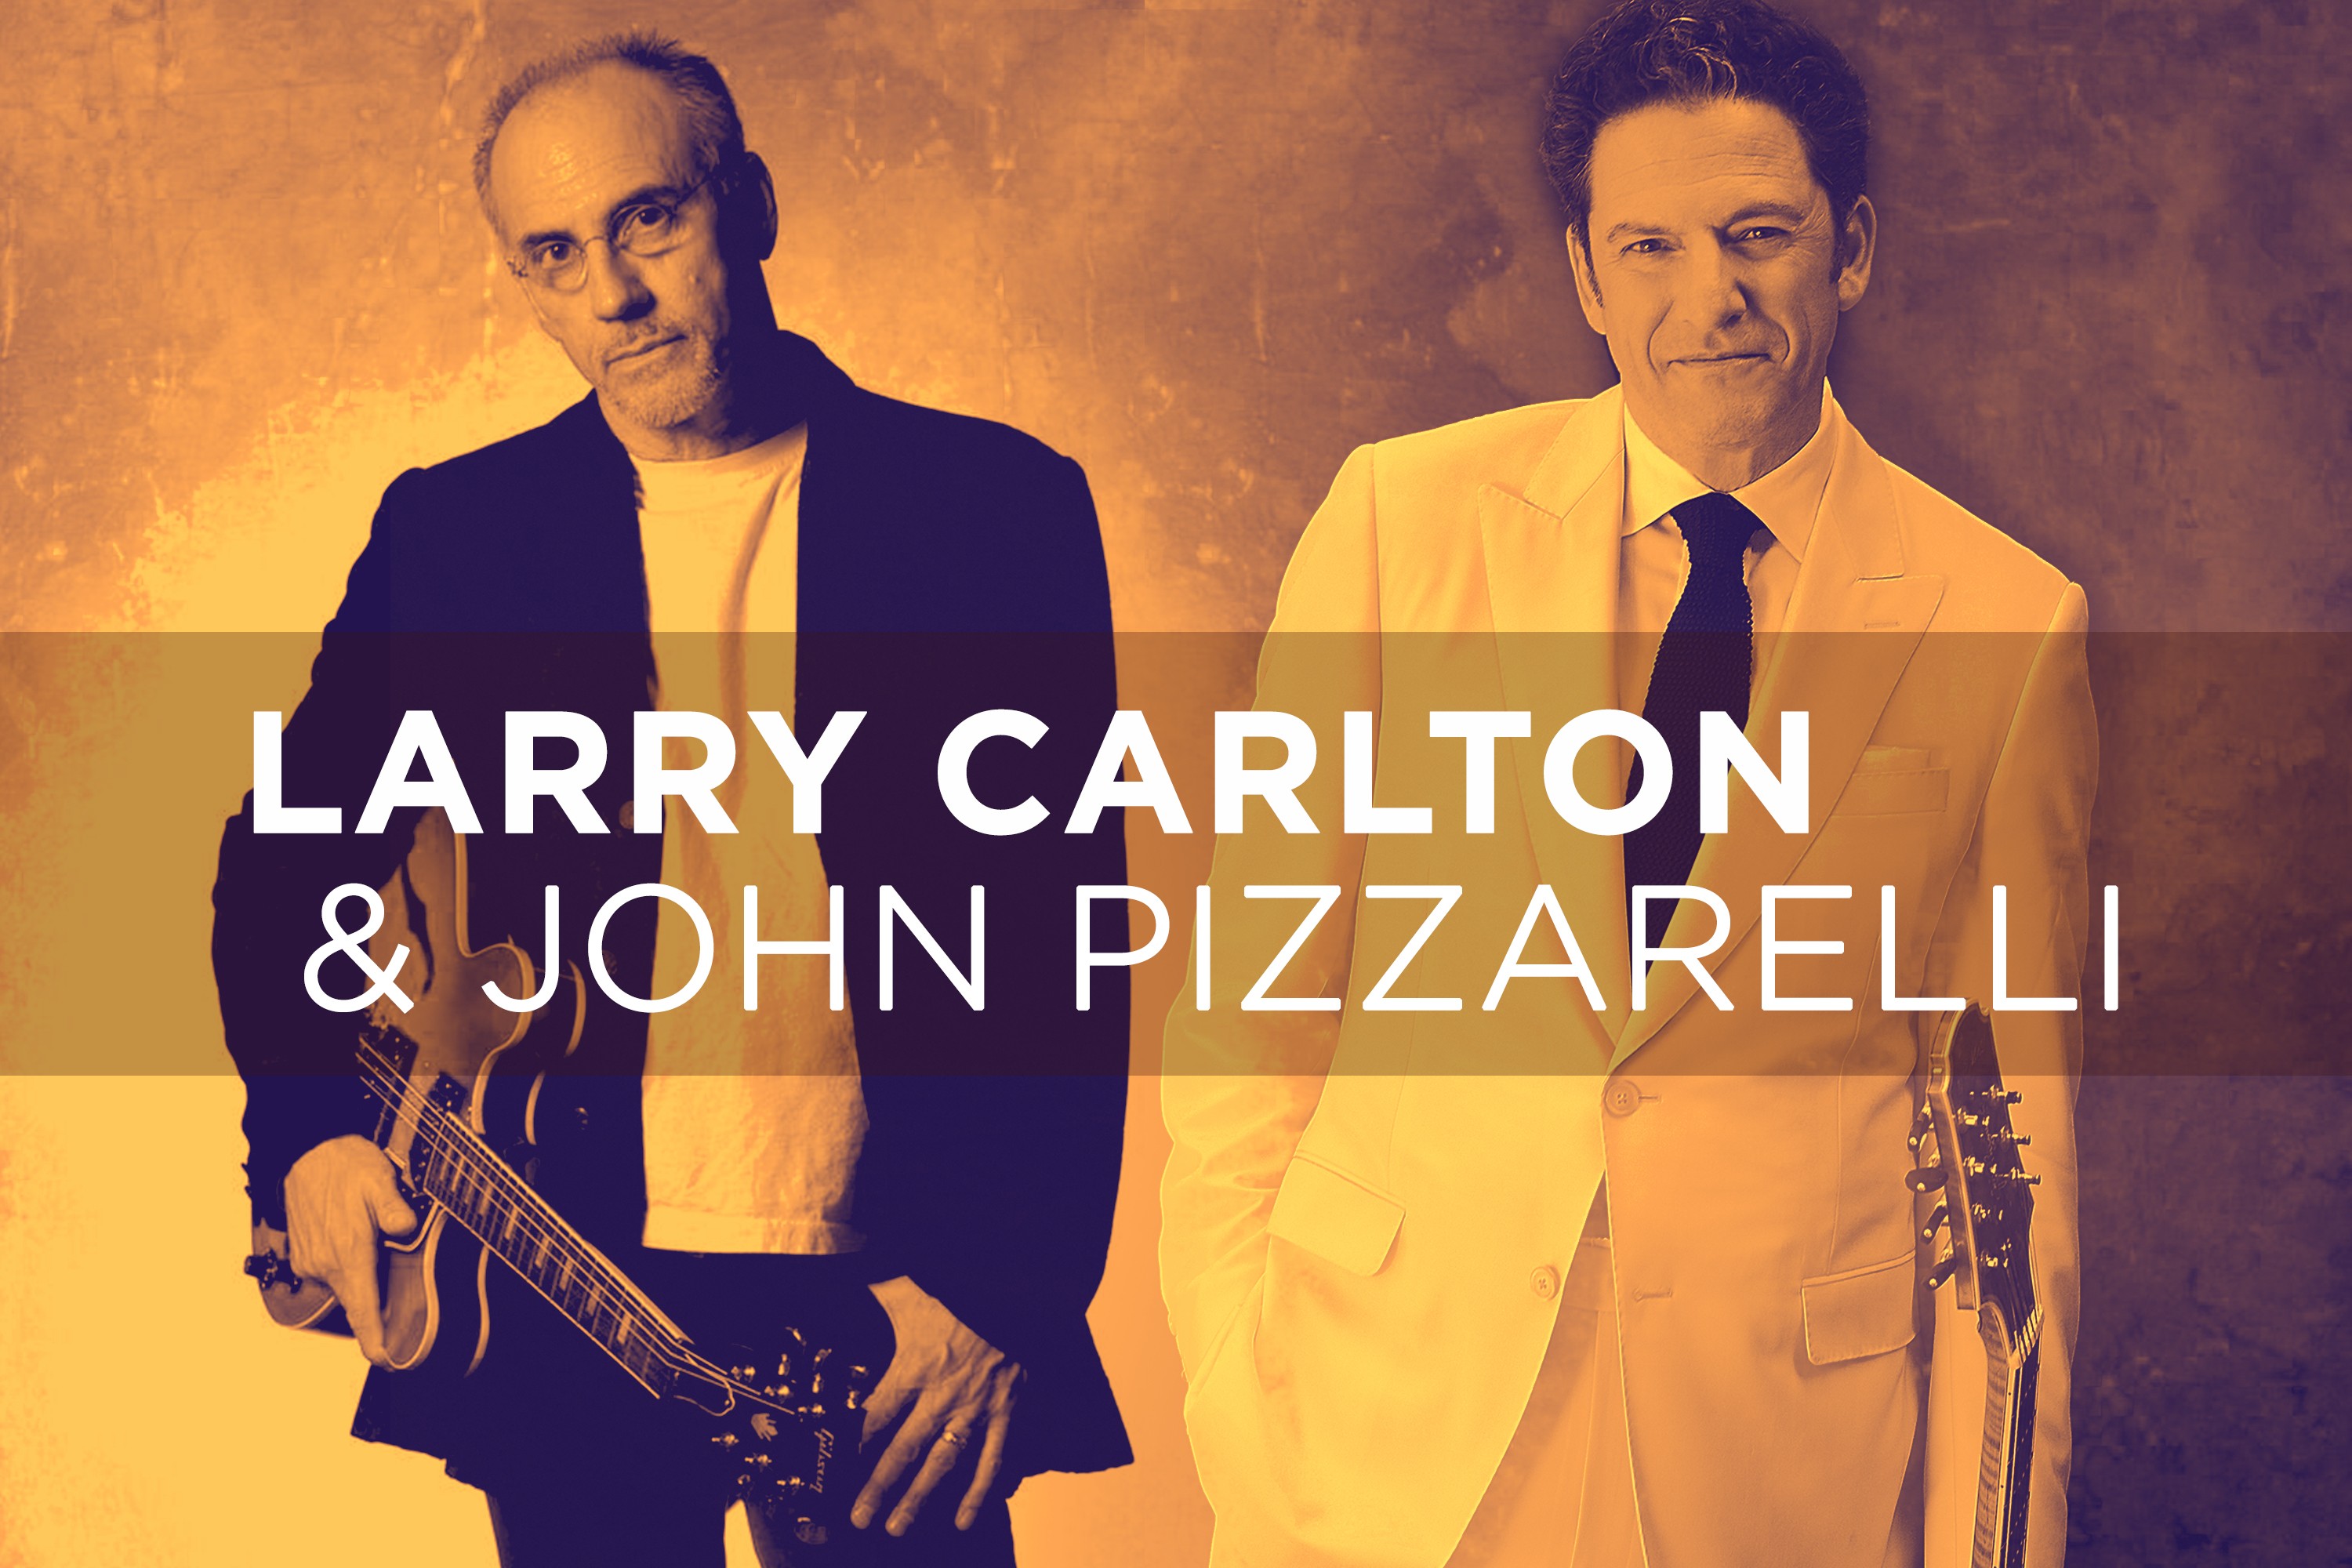 Larry Carlton and John Pizzarelli